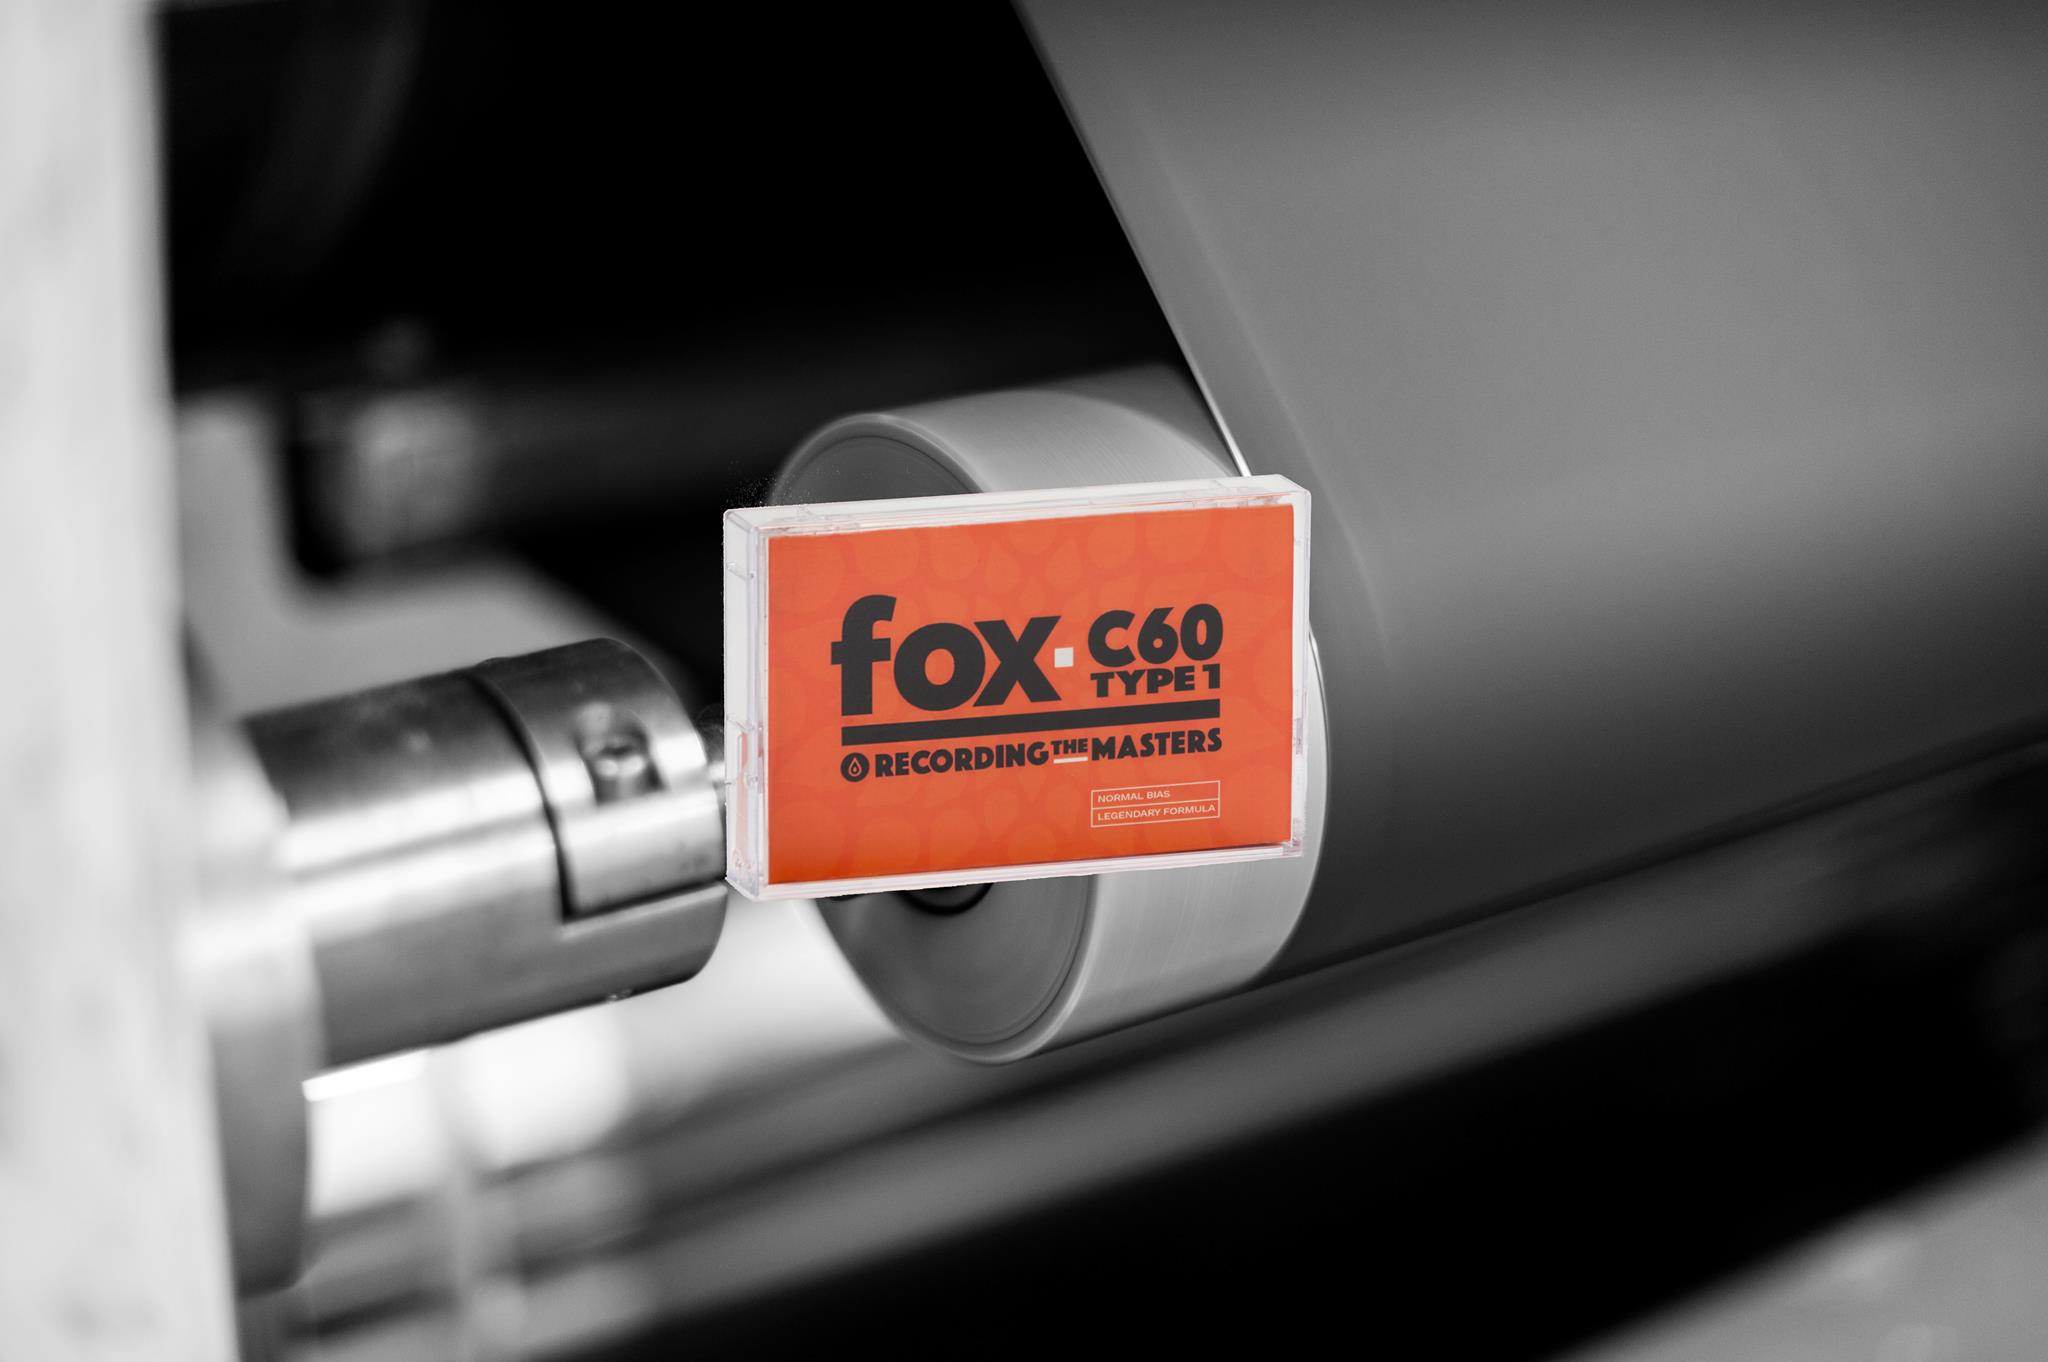 Поступили в продажу!  Компакт кассеты для профессиональных и бытовых магнитофонов  FOX C60  от RECORDING THE MASTERS